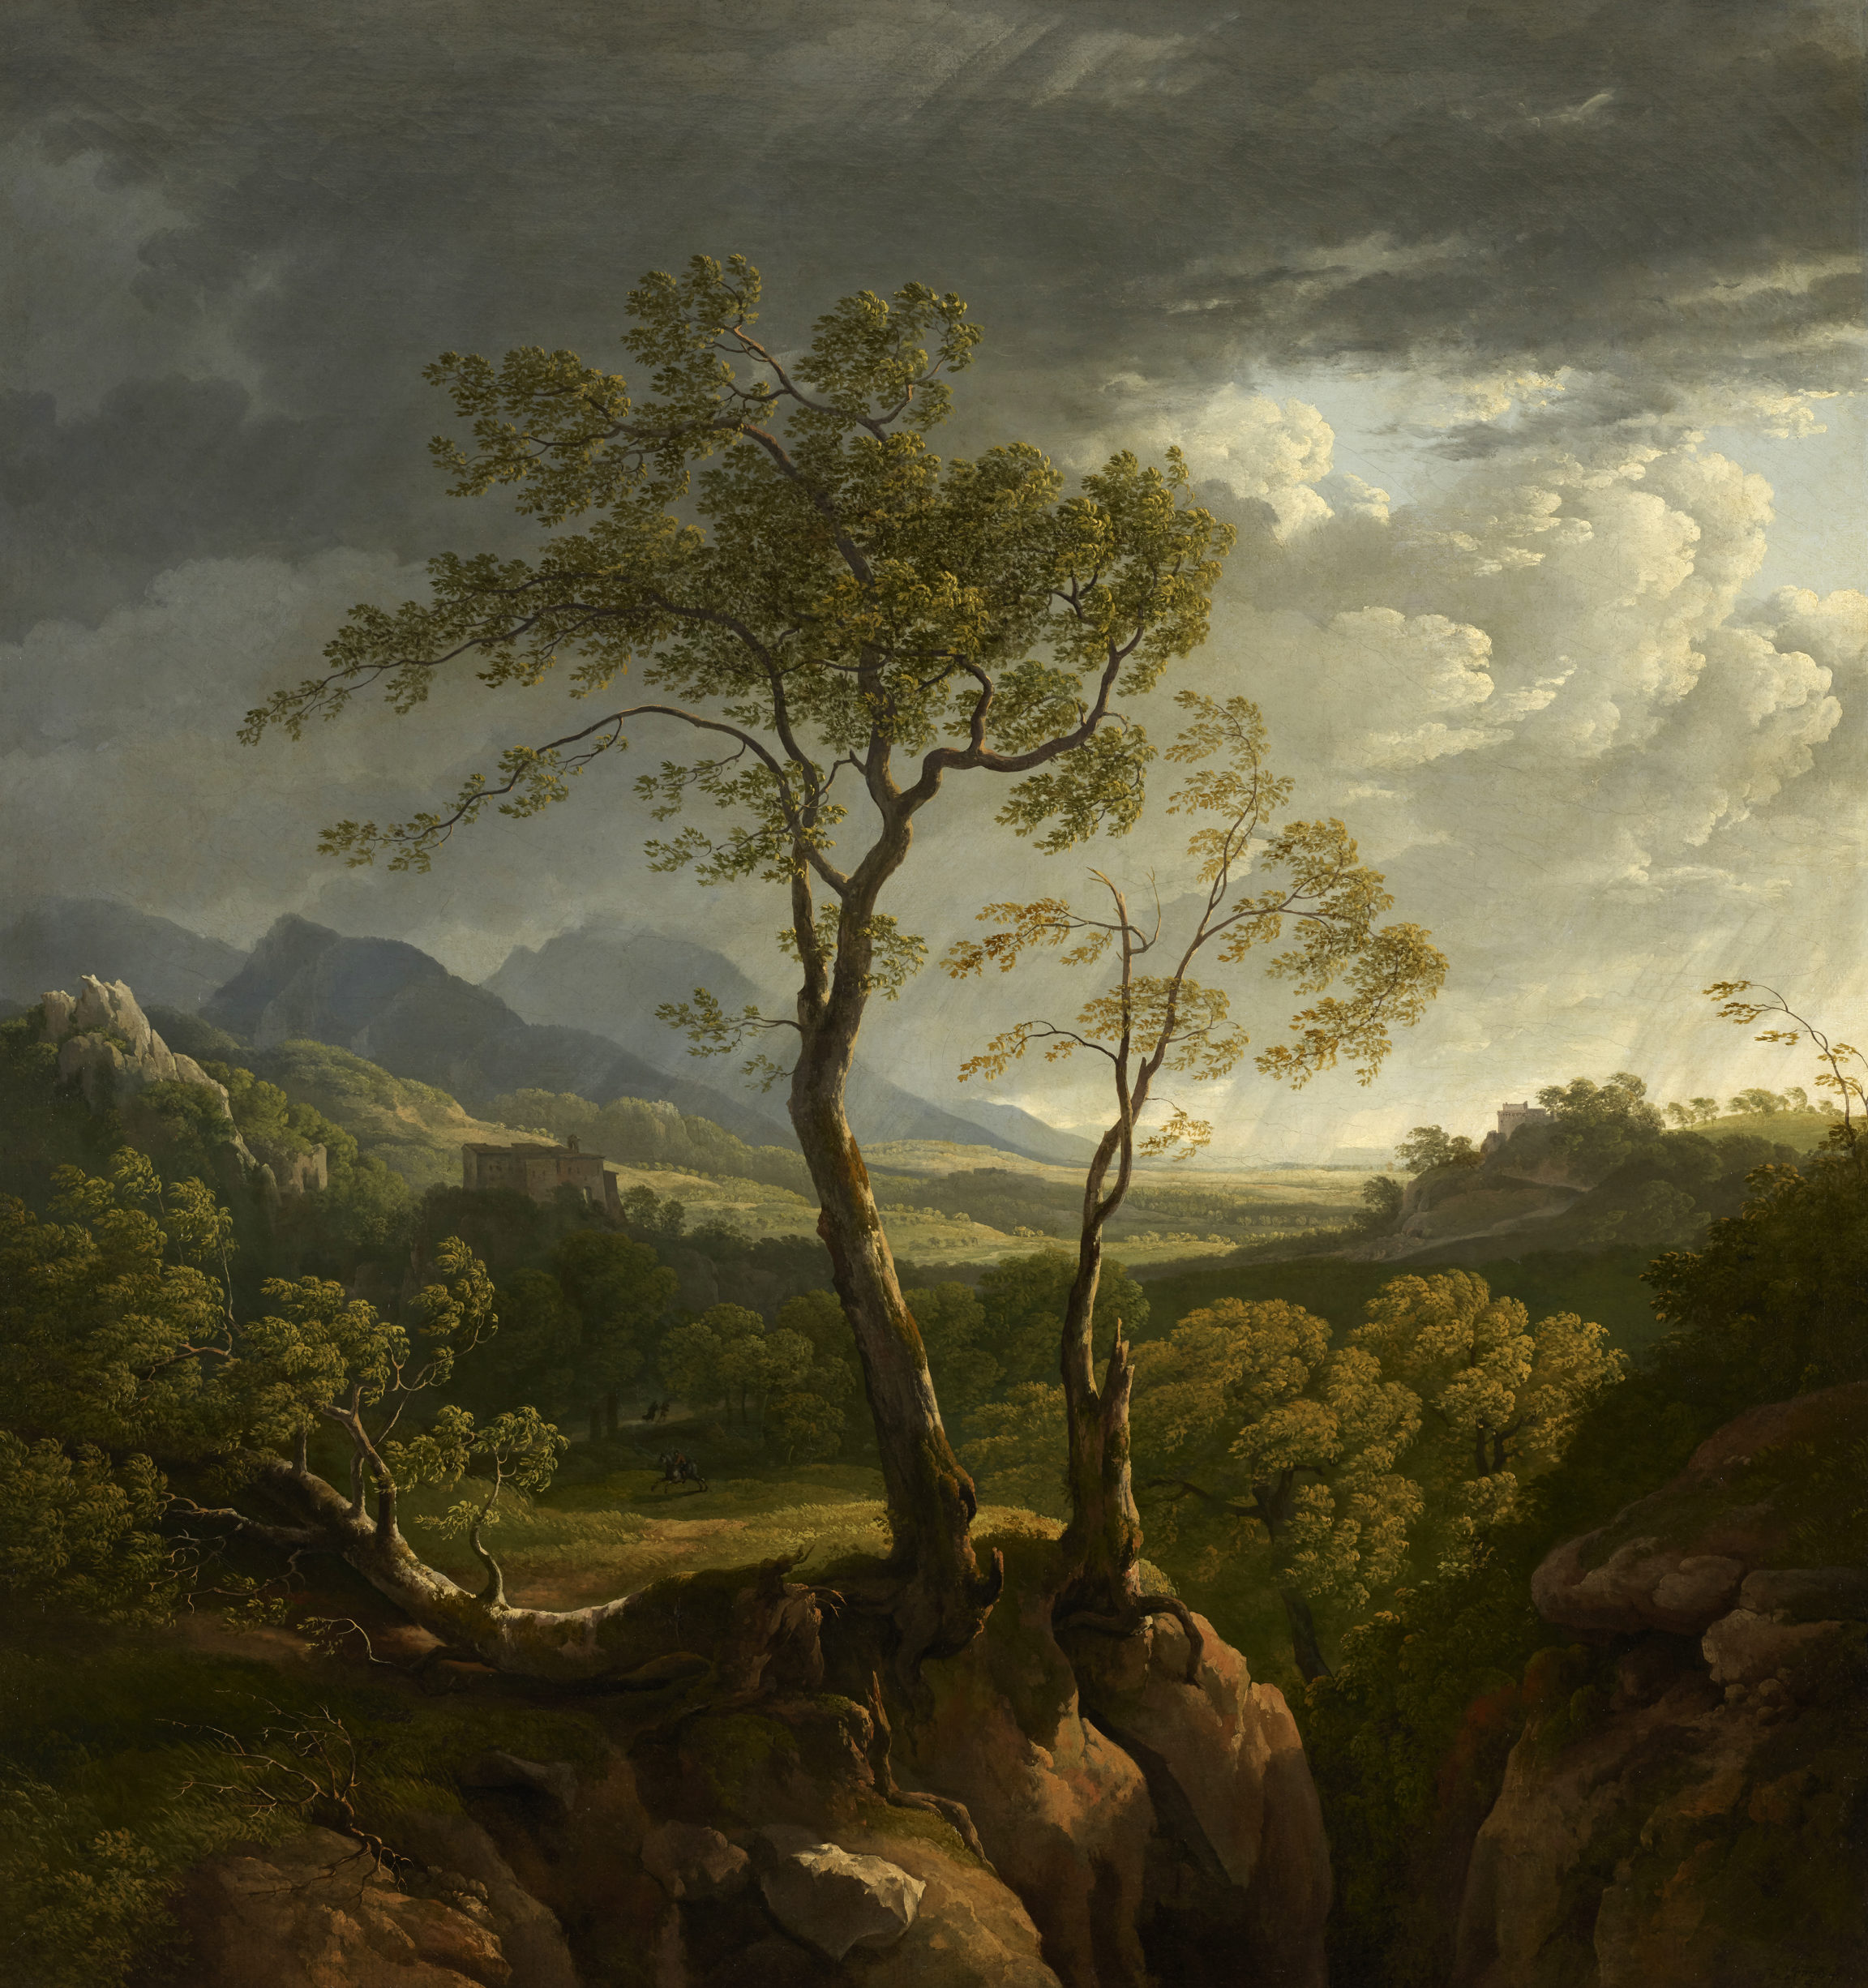 Hendrik Voogd , Campagne romaine sous un ciel d’orage (Roman Countryside under a Stormy Sky), c. 1800